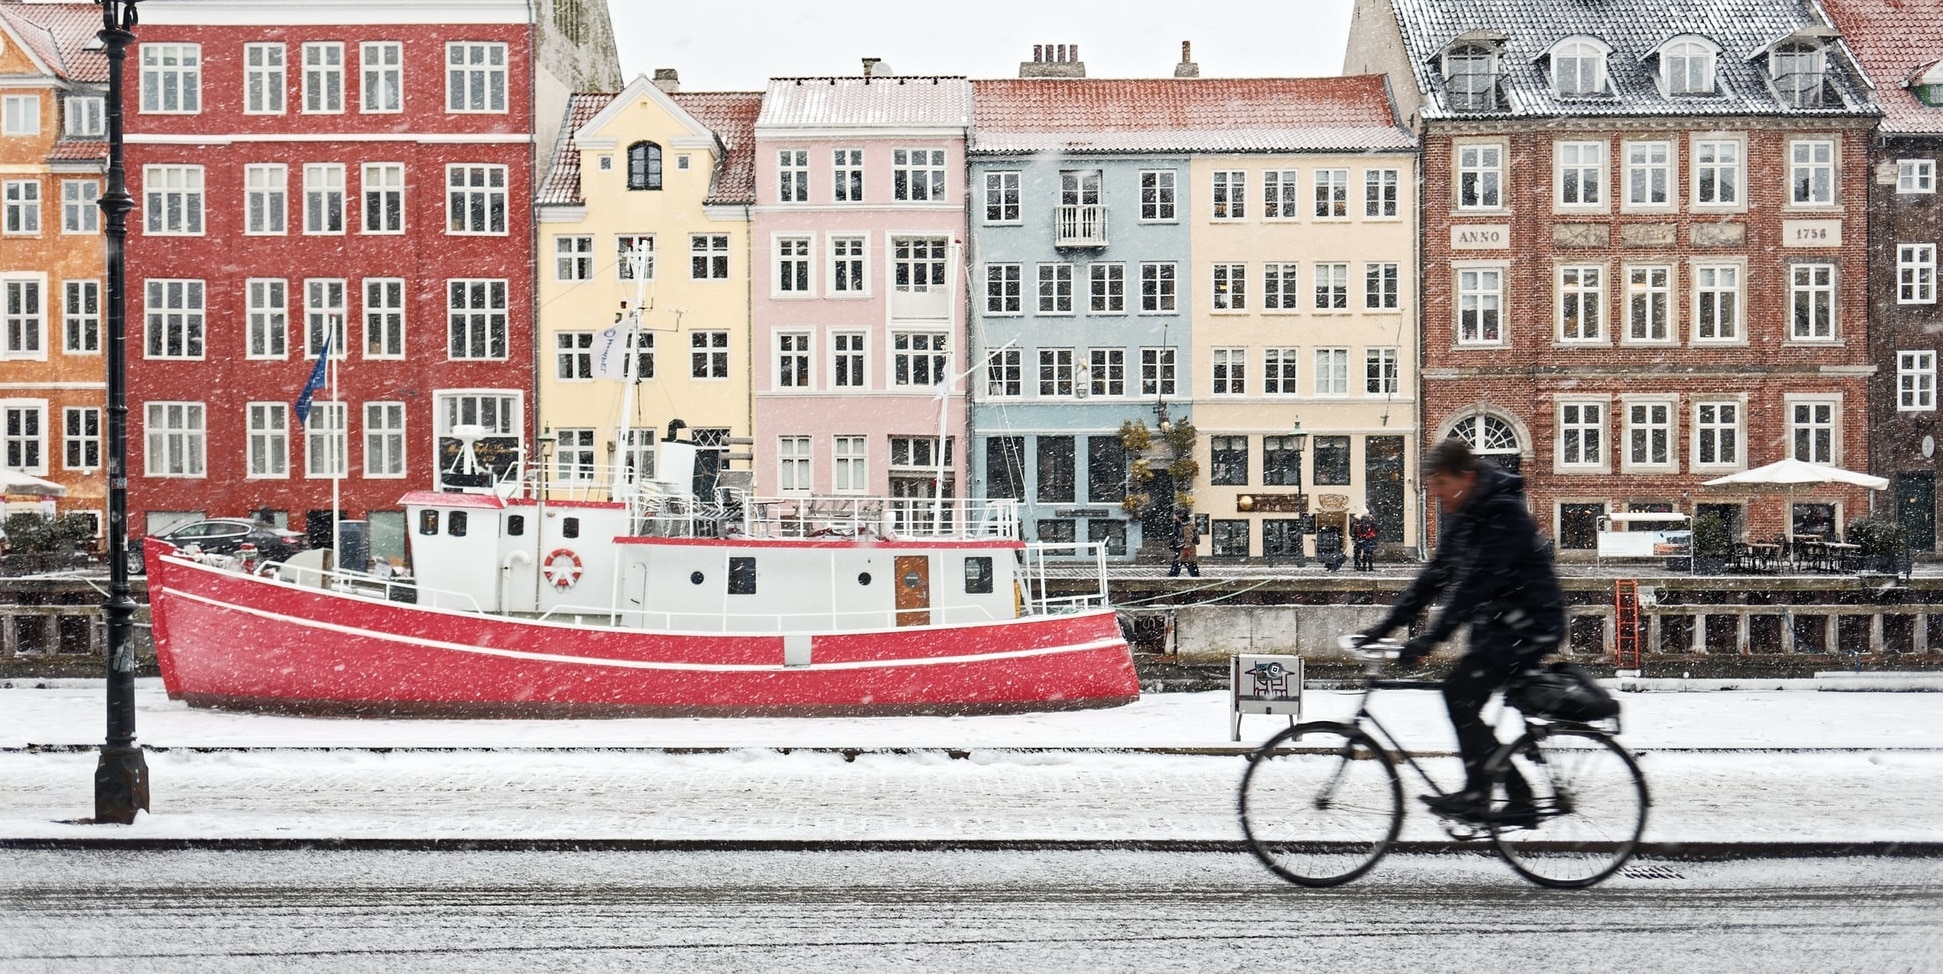 Activités et visites gratuites à faire à Copenhague